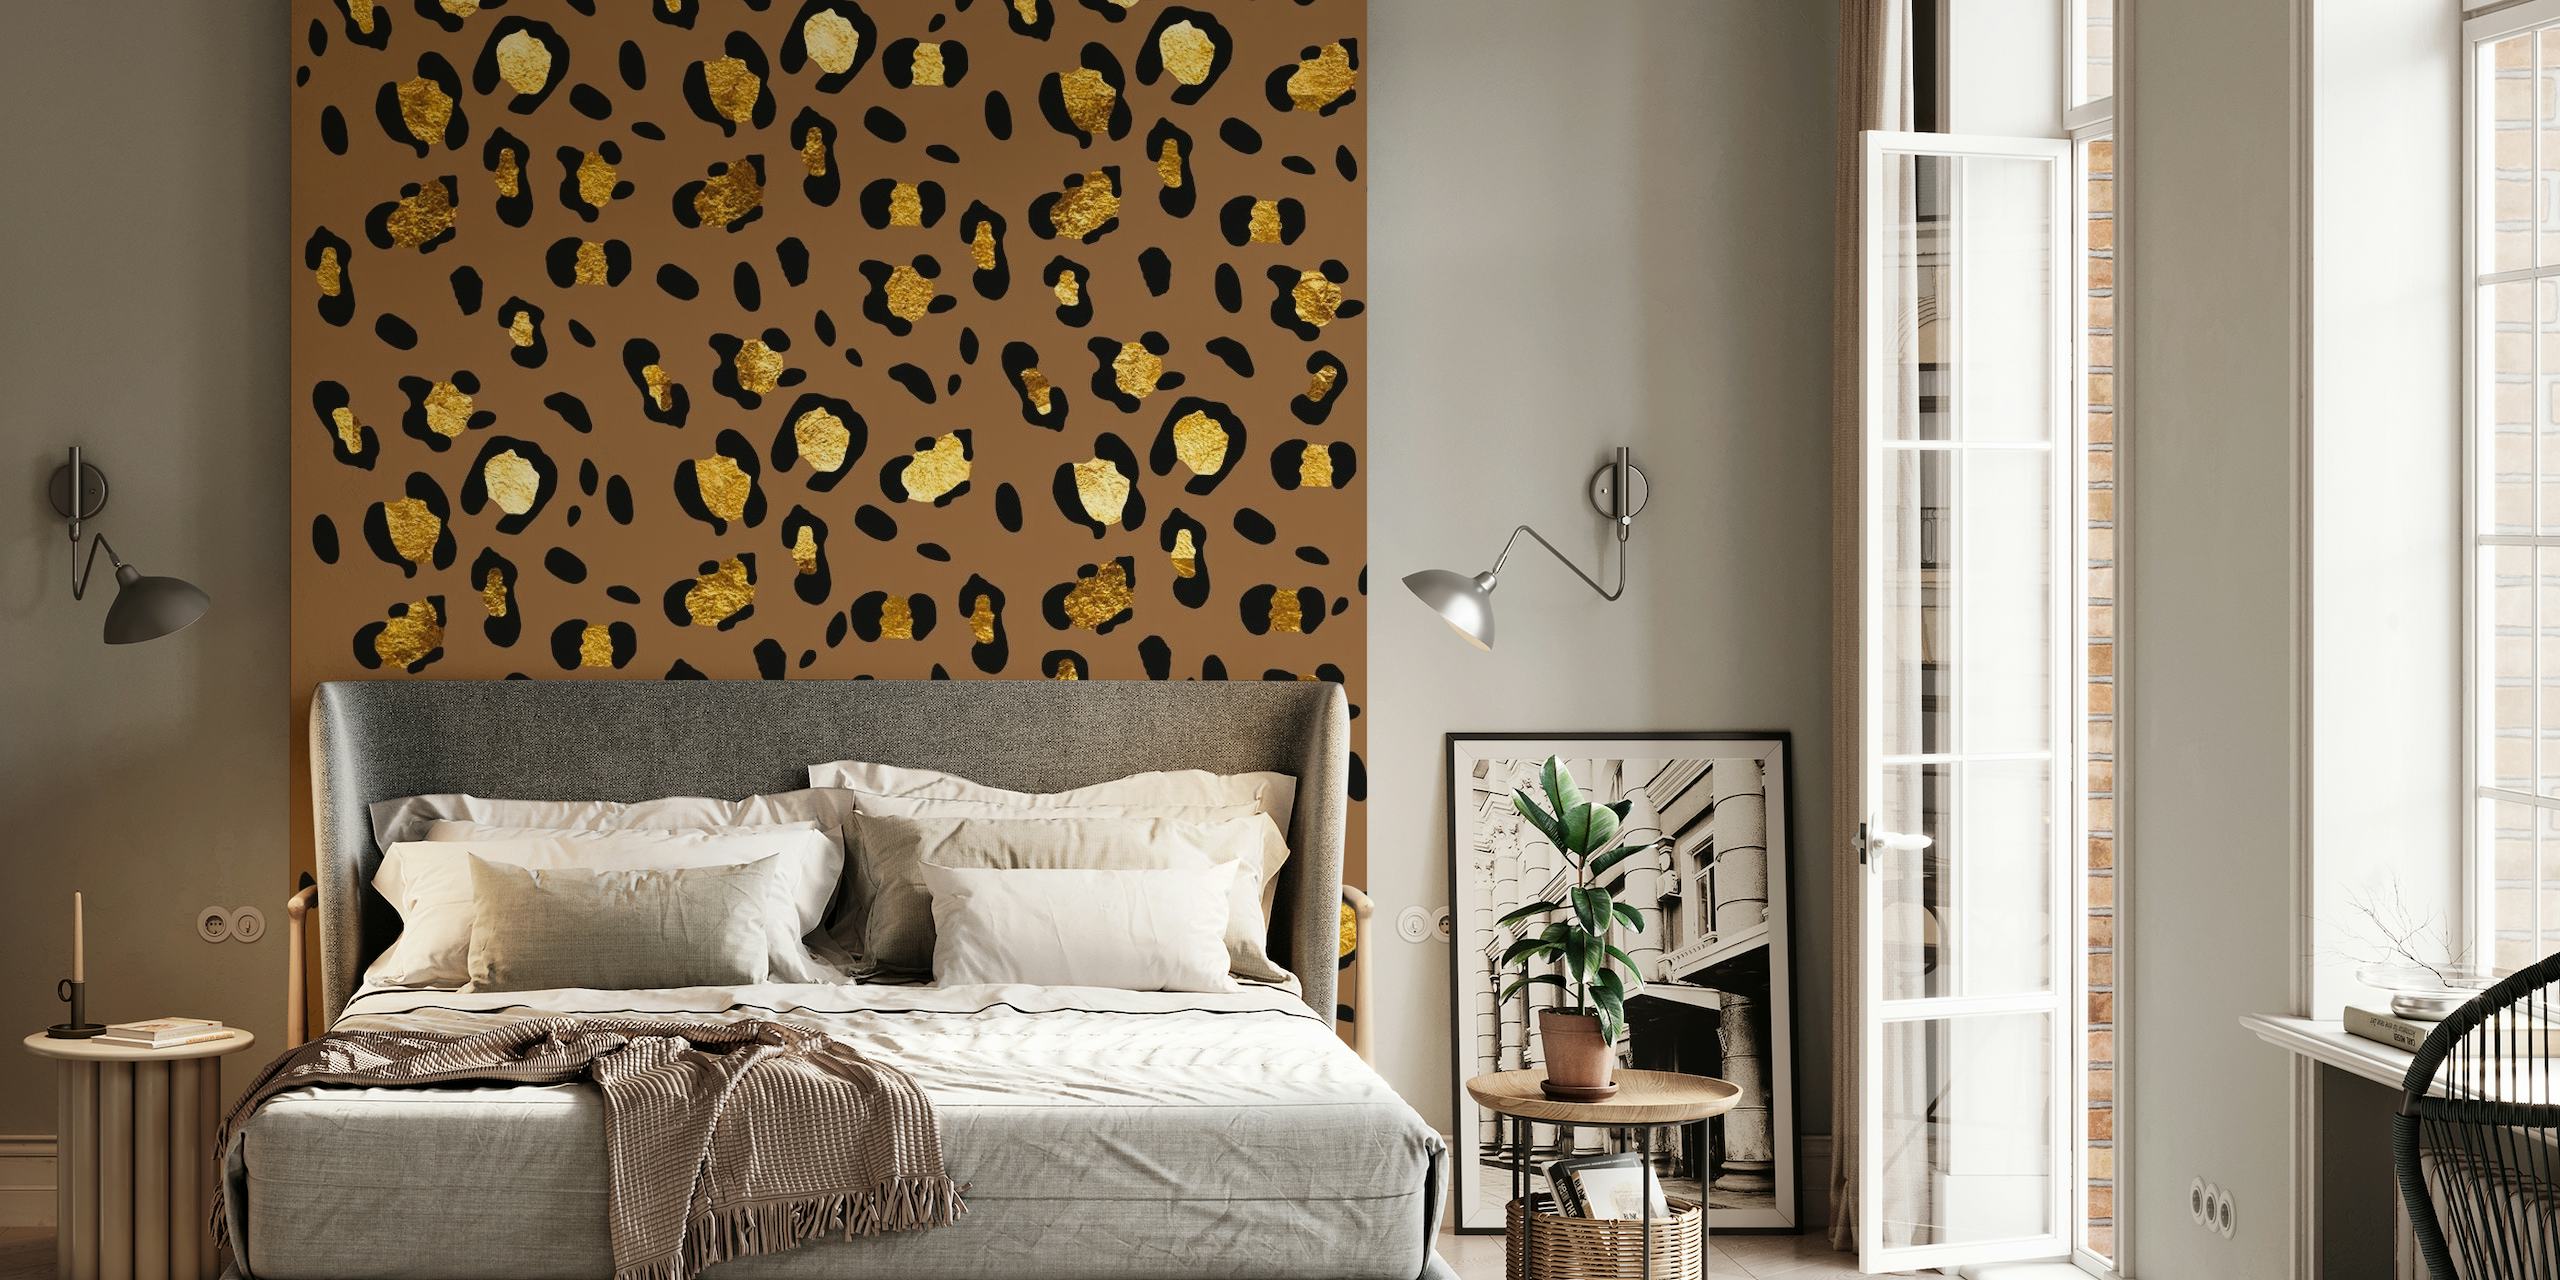 Leopard Animal Print Glam 29 fotobehang met gouden stippen op een koffiekleurige achtergrond